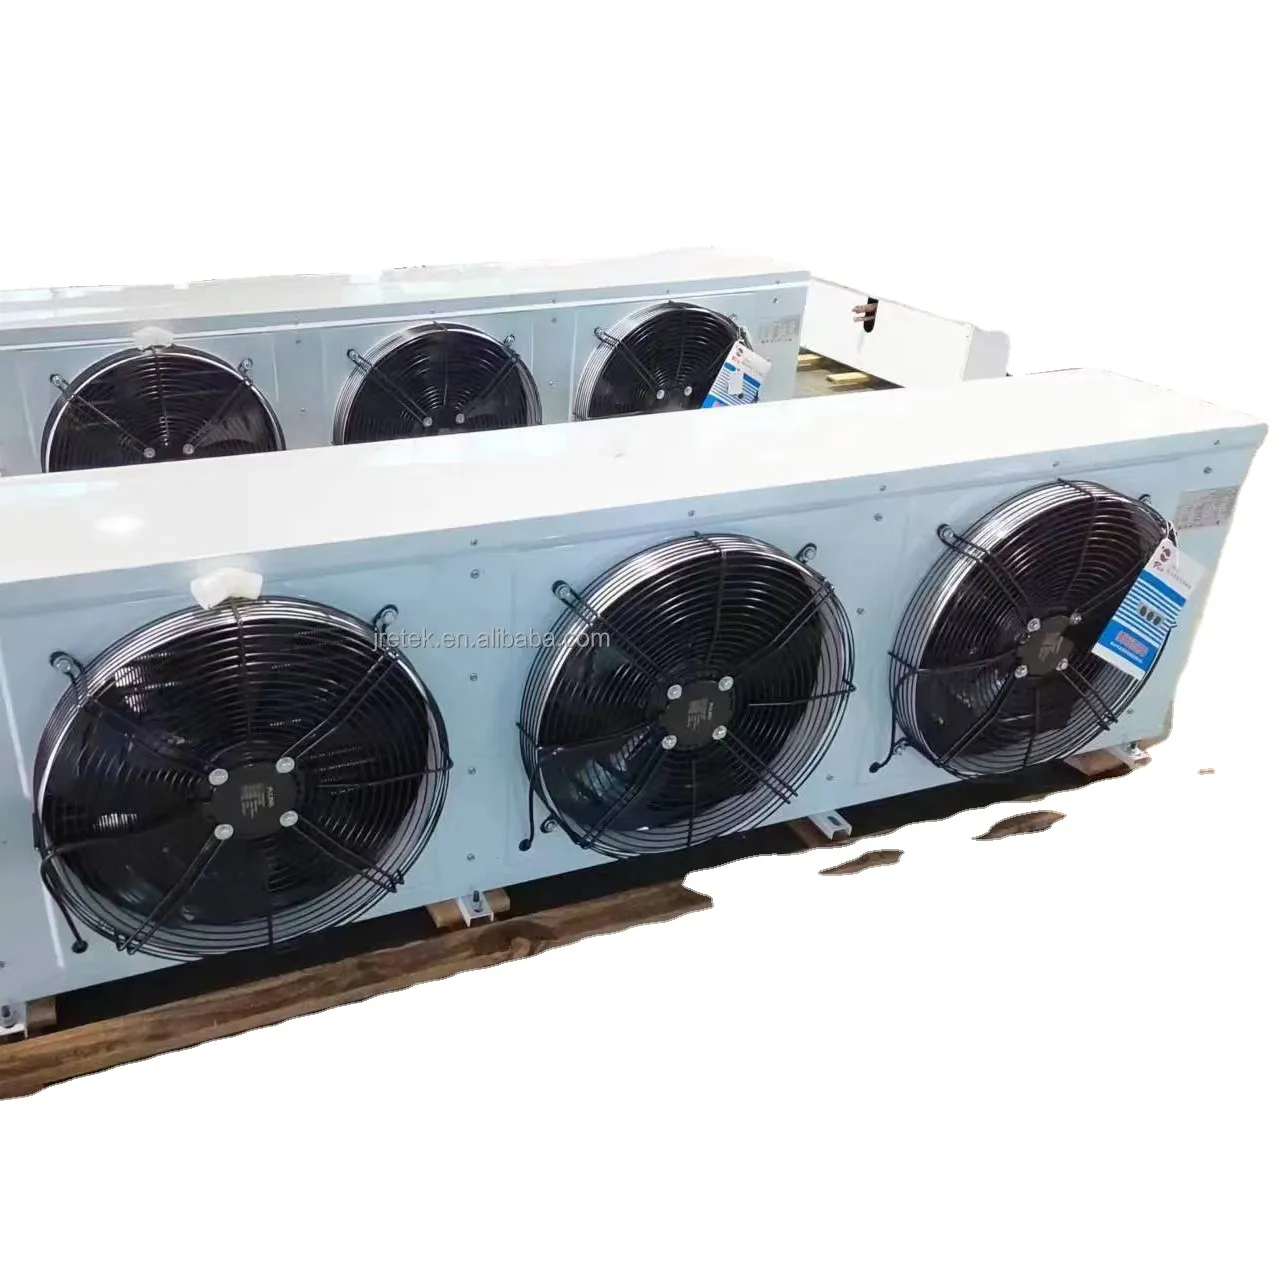 Dispositivo di raffreddamento dell'unità di refrigerazione raffreddato ad aria di sbrinamento del riscaldatore industriale su misura per la cella frigorifera di congelamento rapido